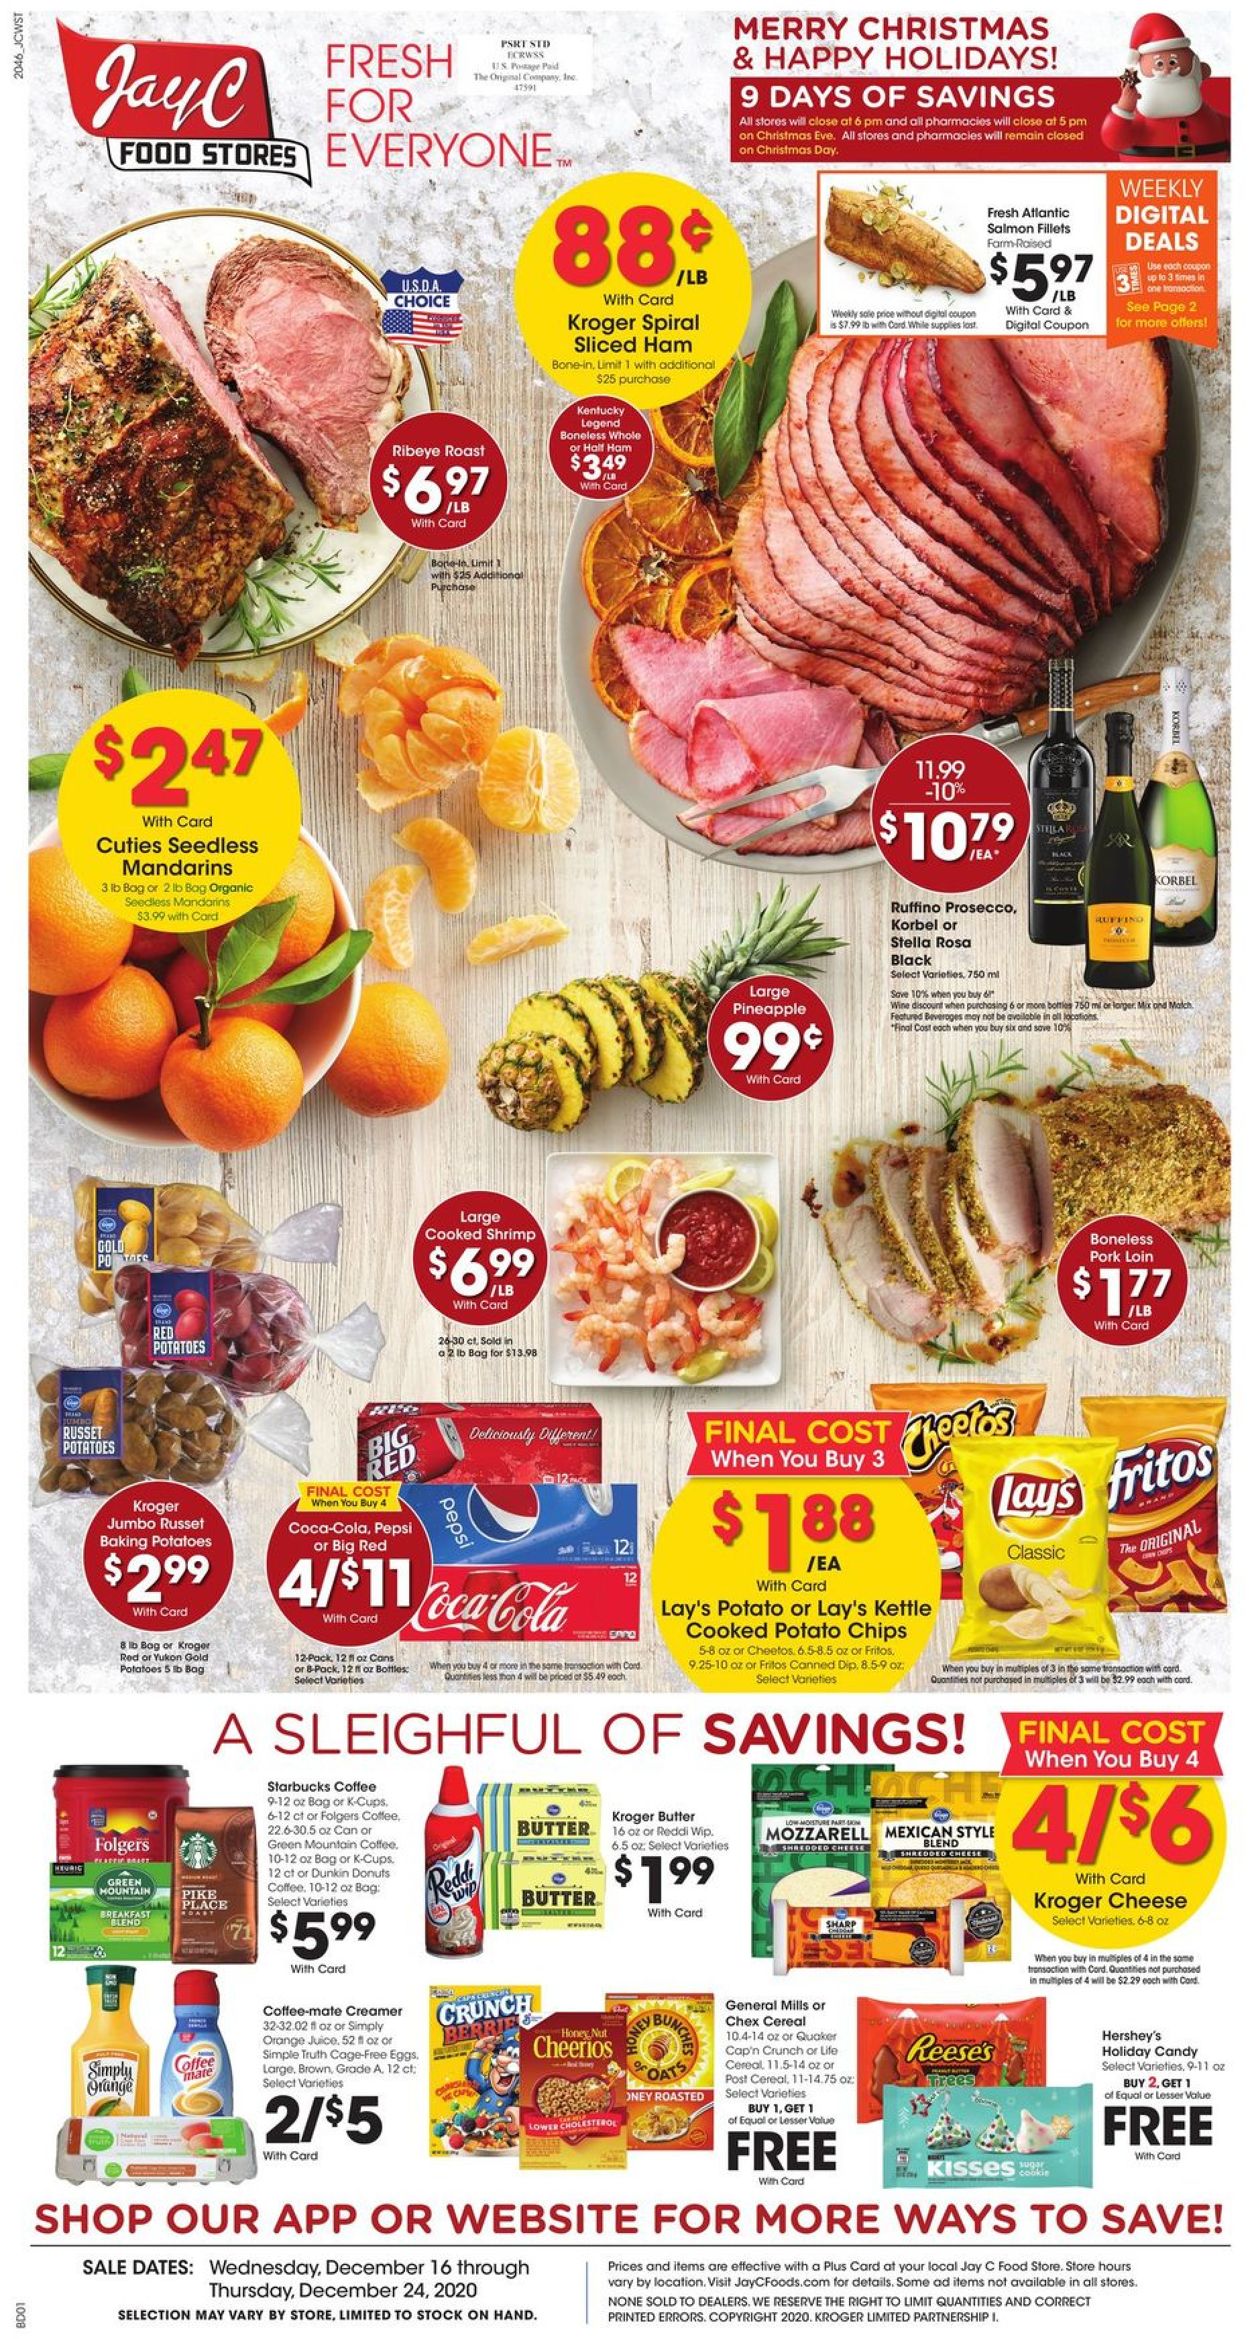 Jay C Food Stores Christmas Ad 2020 Weekly Ad Circular - valid 12/16-12/24/2020